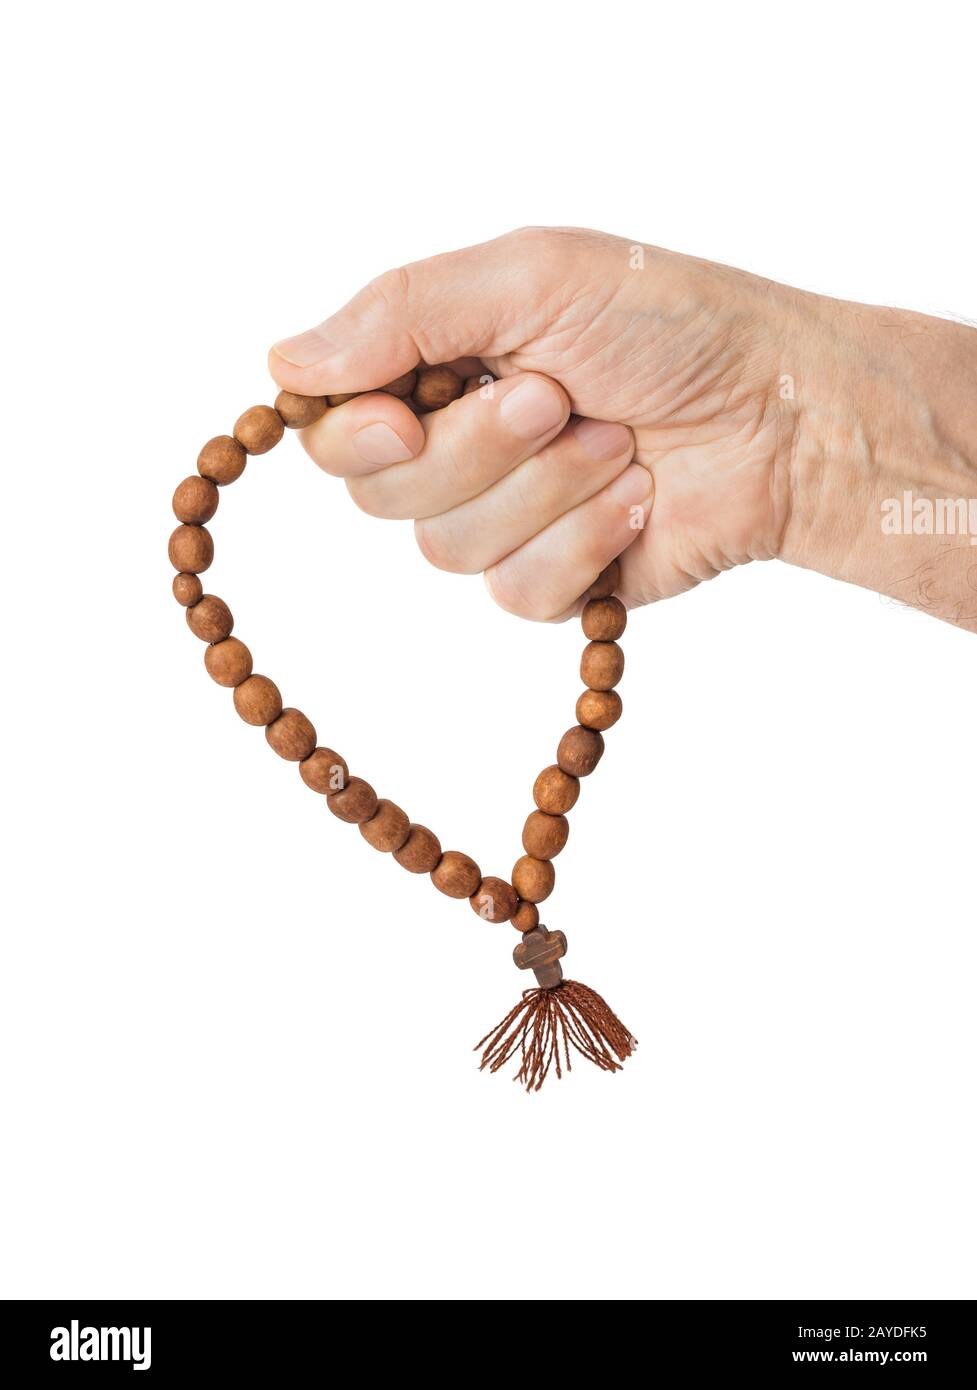 Hand with prayer beads Stock Photo